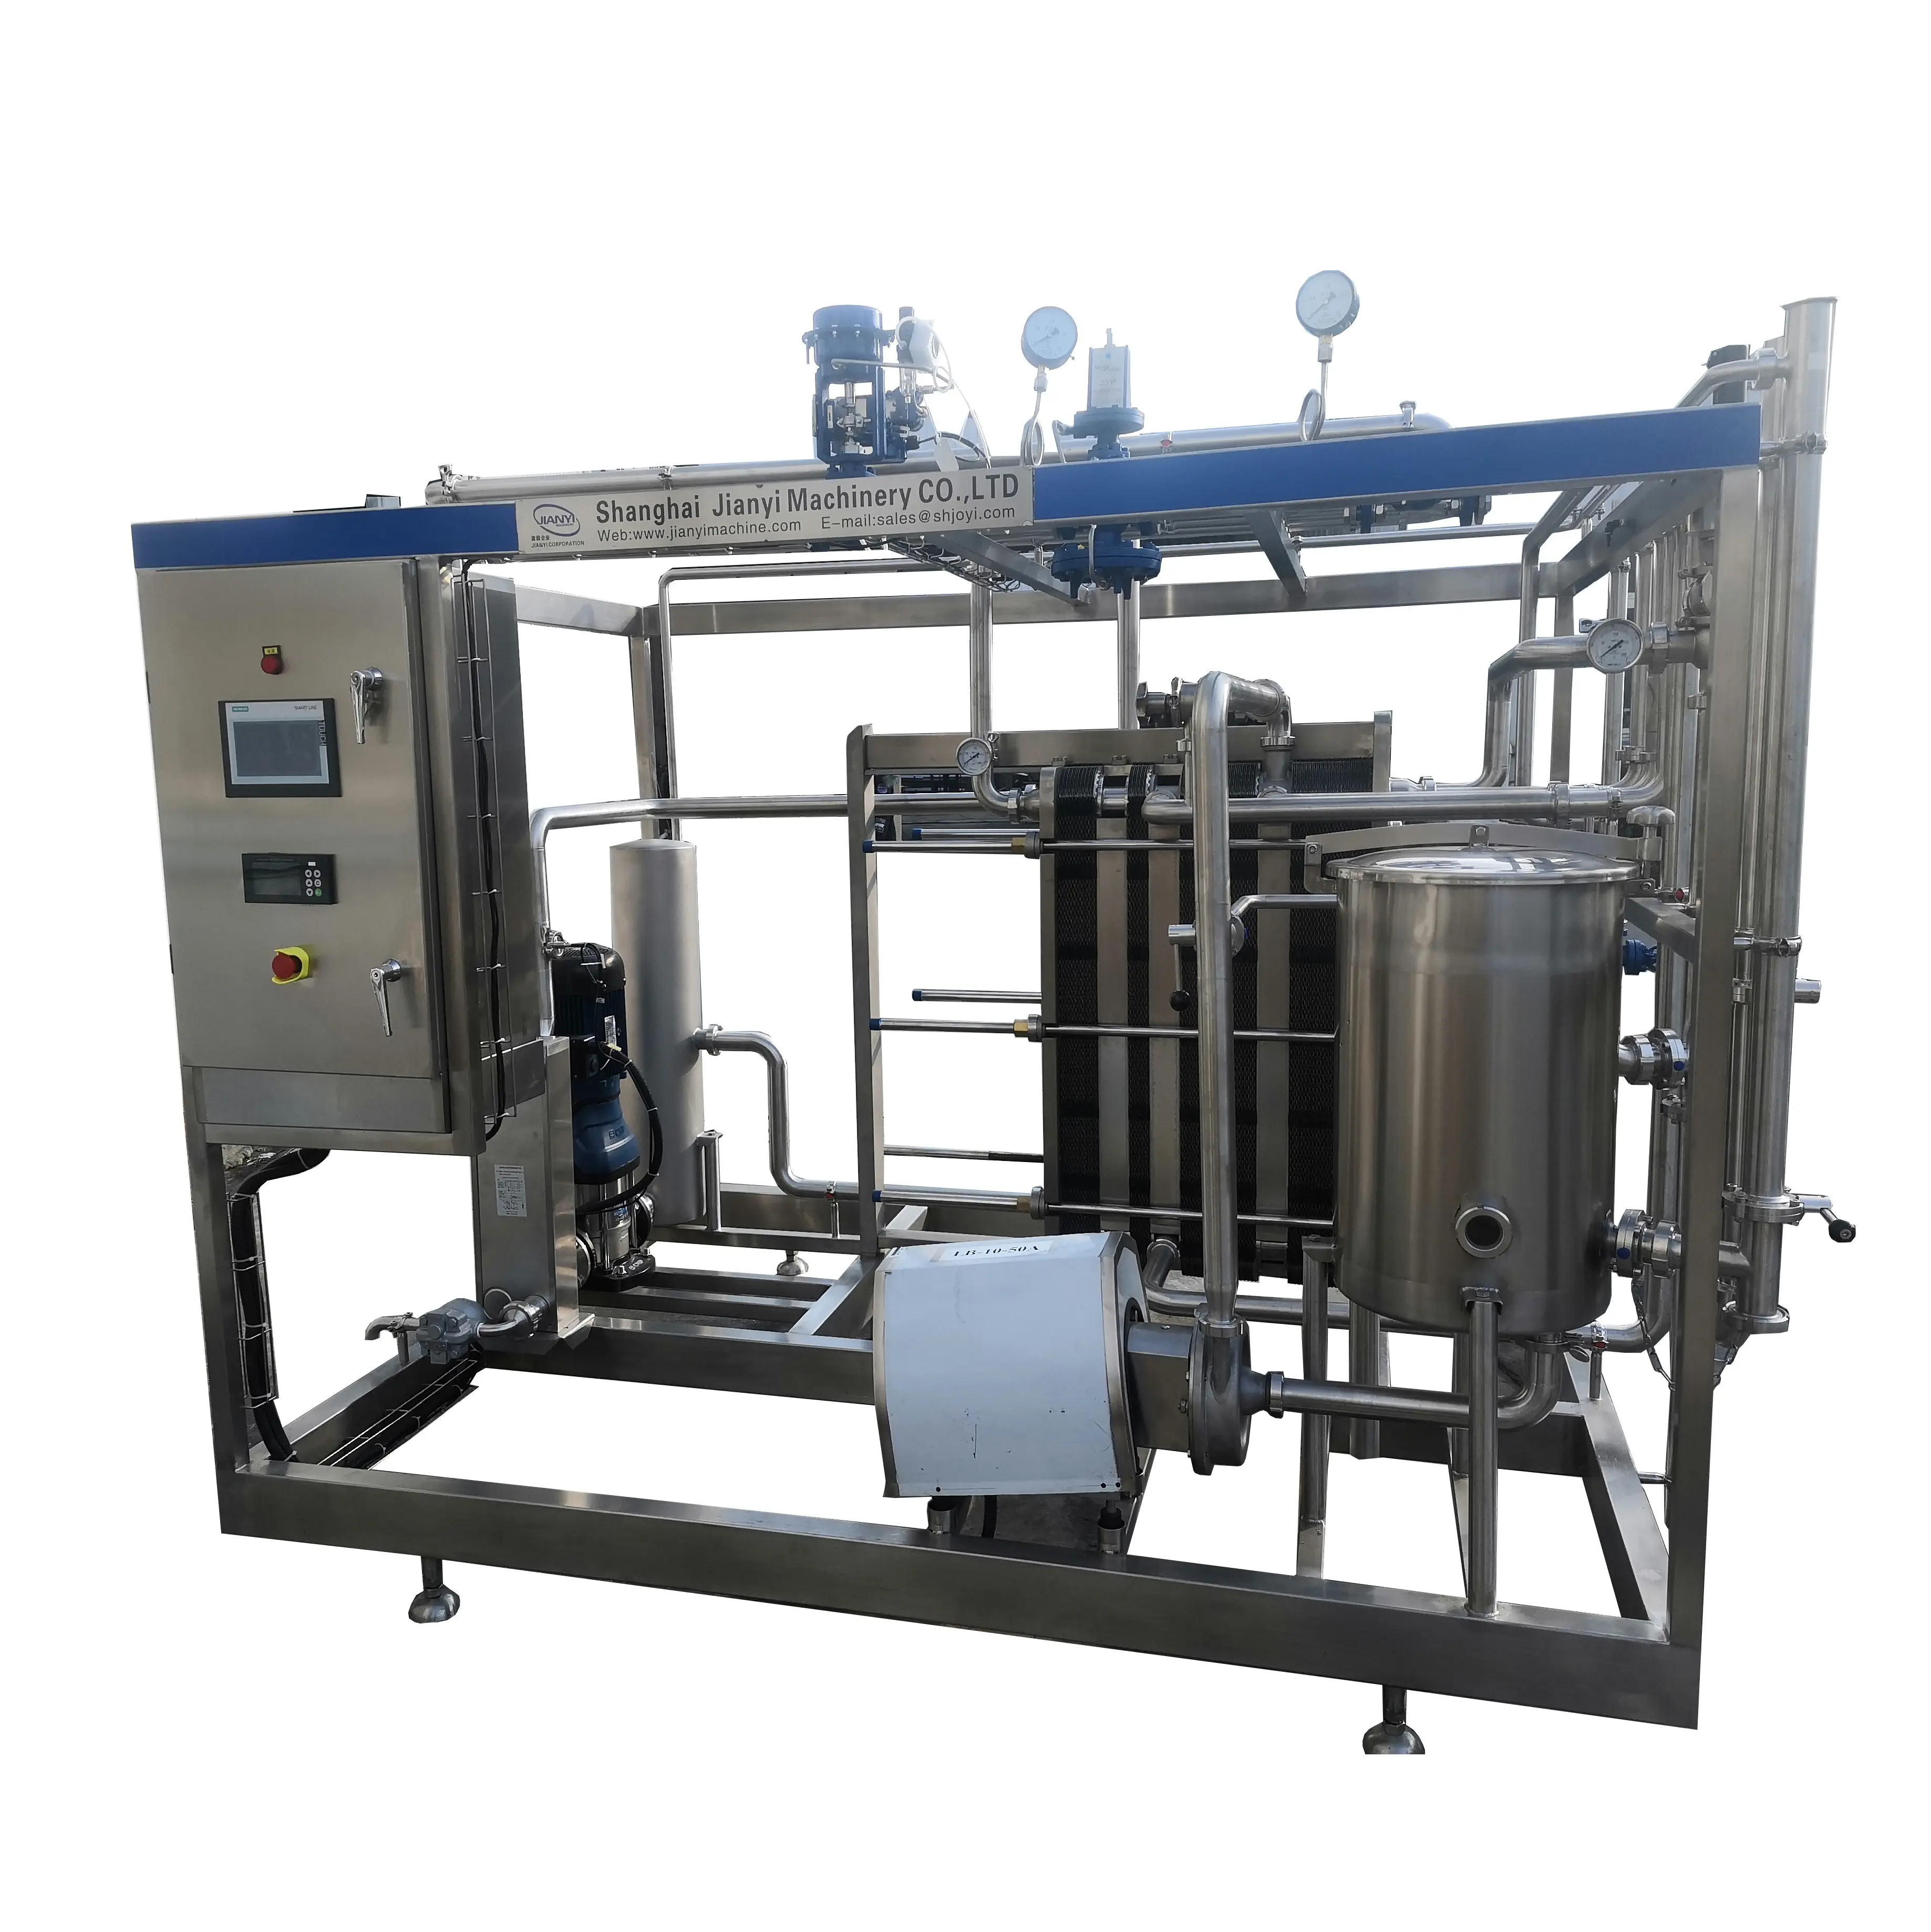 Latte evaporato in bustina macchina per la produzione di latte evaporato per impianto di produzione lattiero-casearia